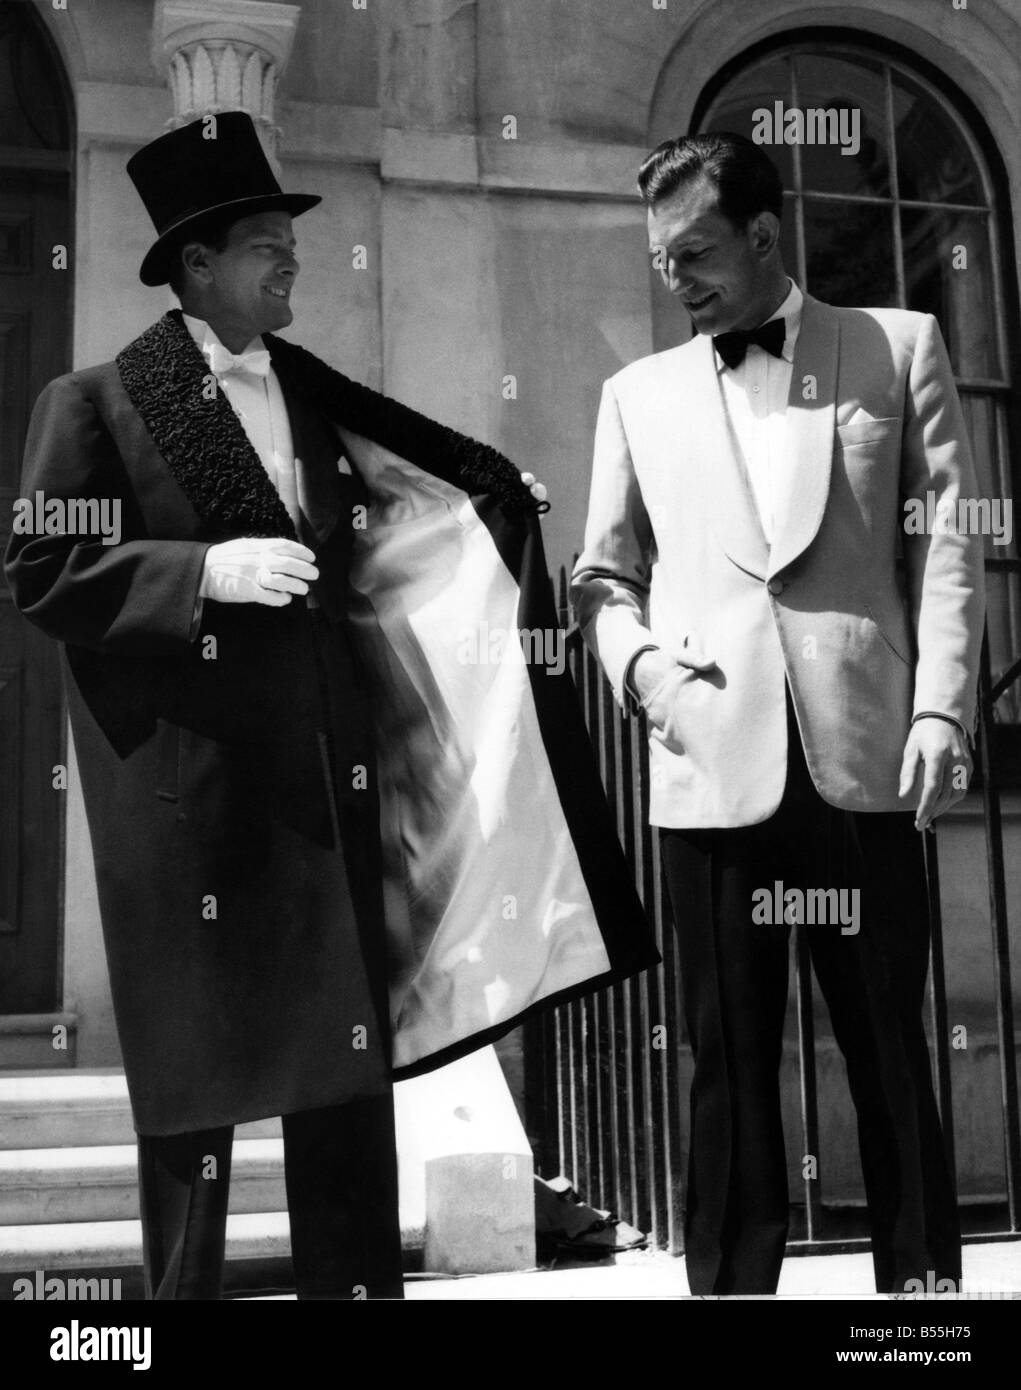 Mode masculine des années 1950 Banque de photographies et d'images à haute  résolution - Alamy